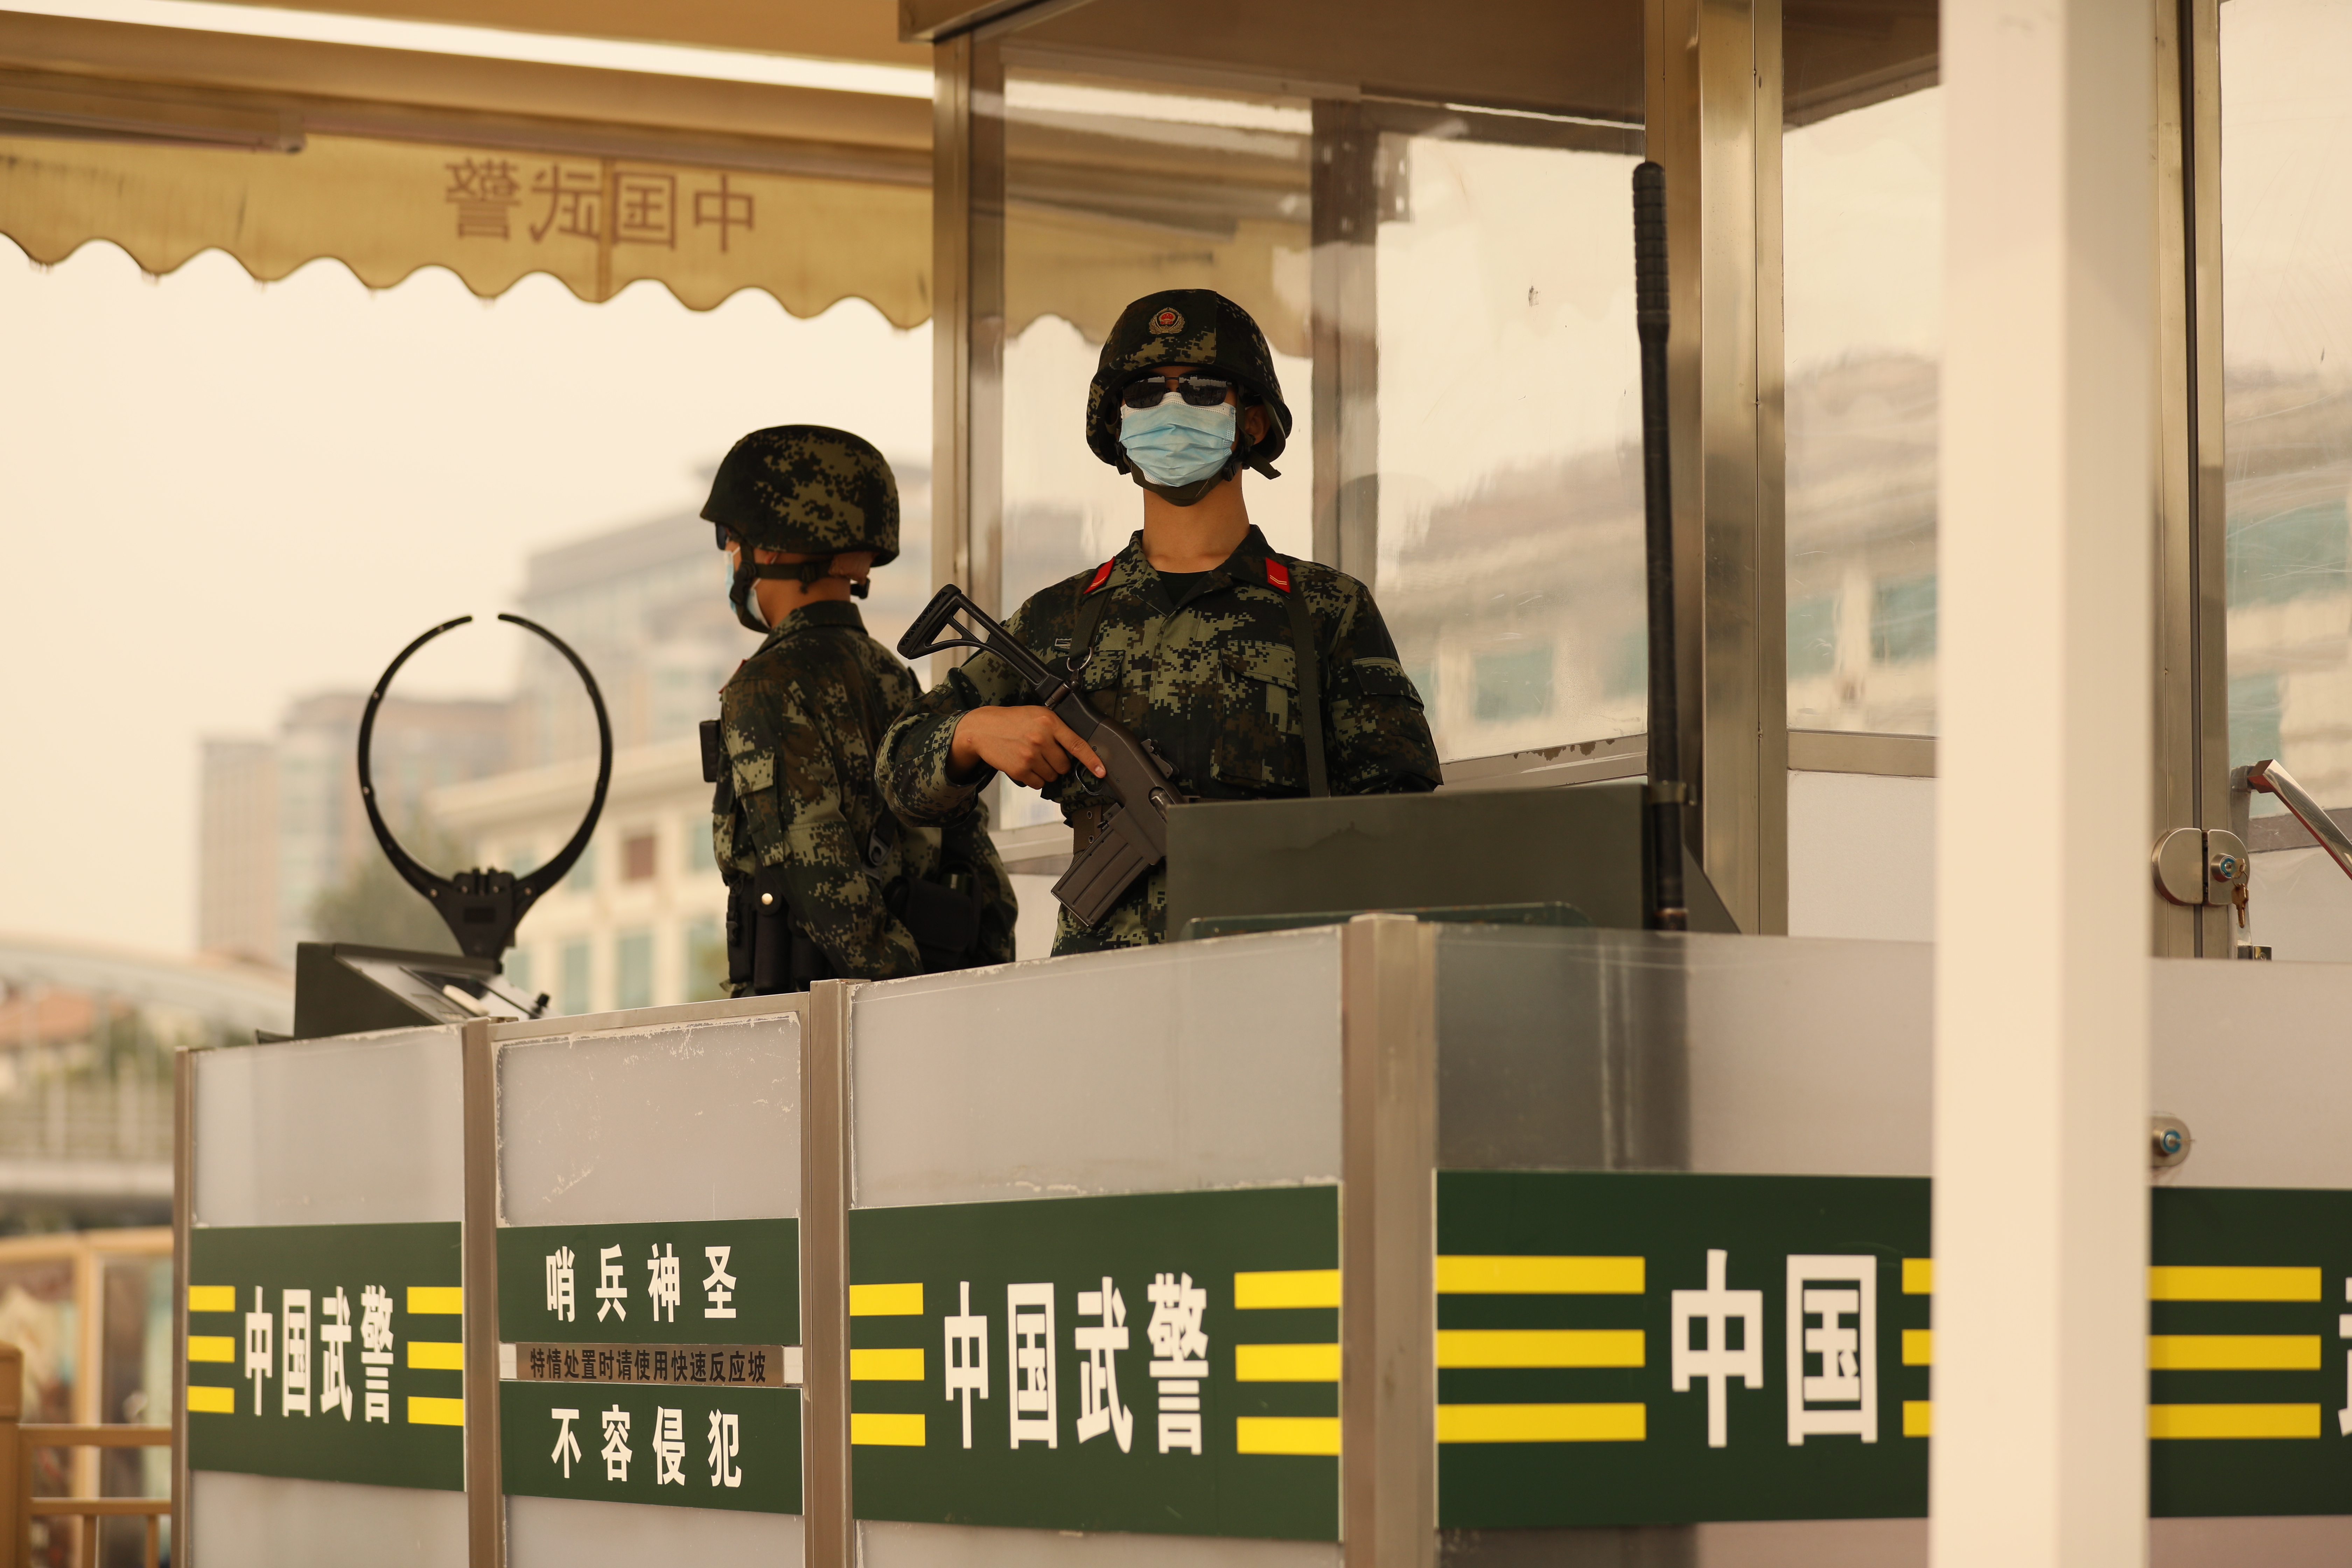 为维护好国庆假期出行秩序和旅客安全,武警北京总队执勤第二支队强化